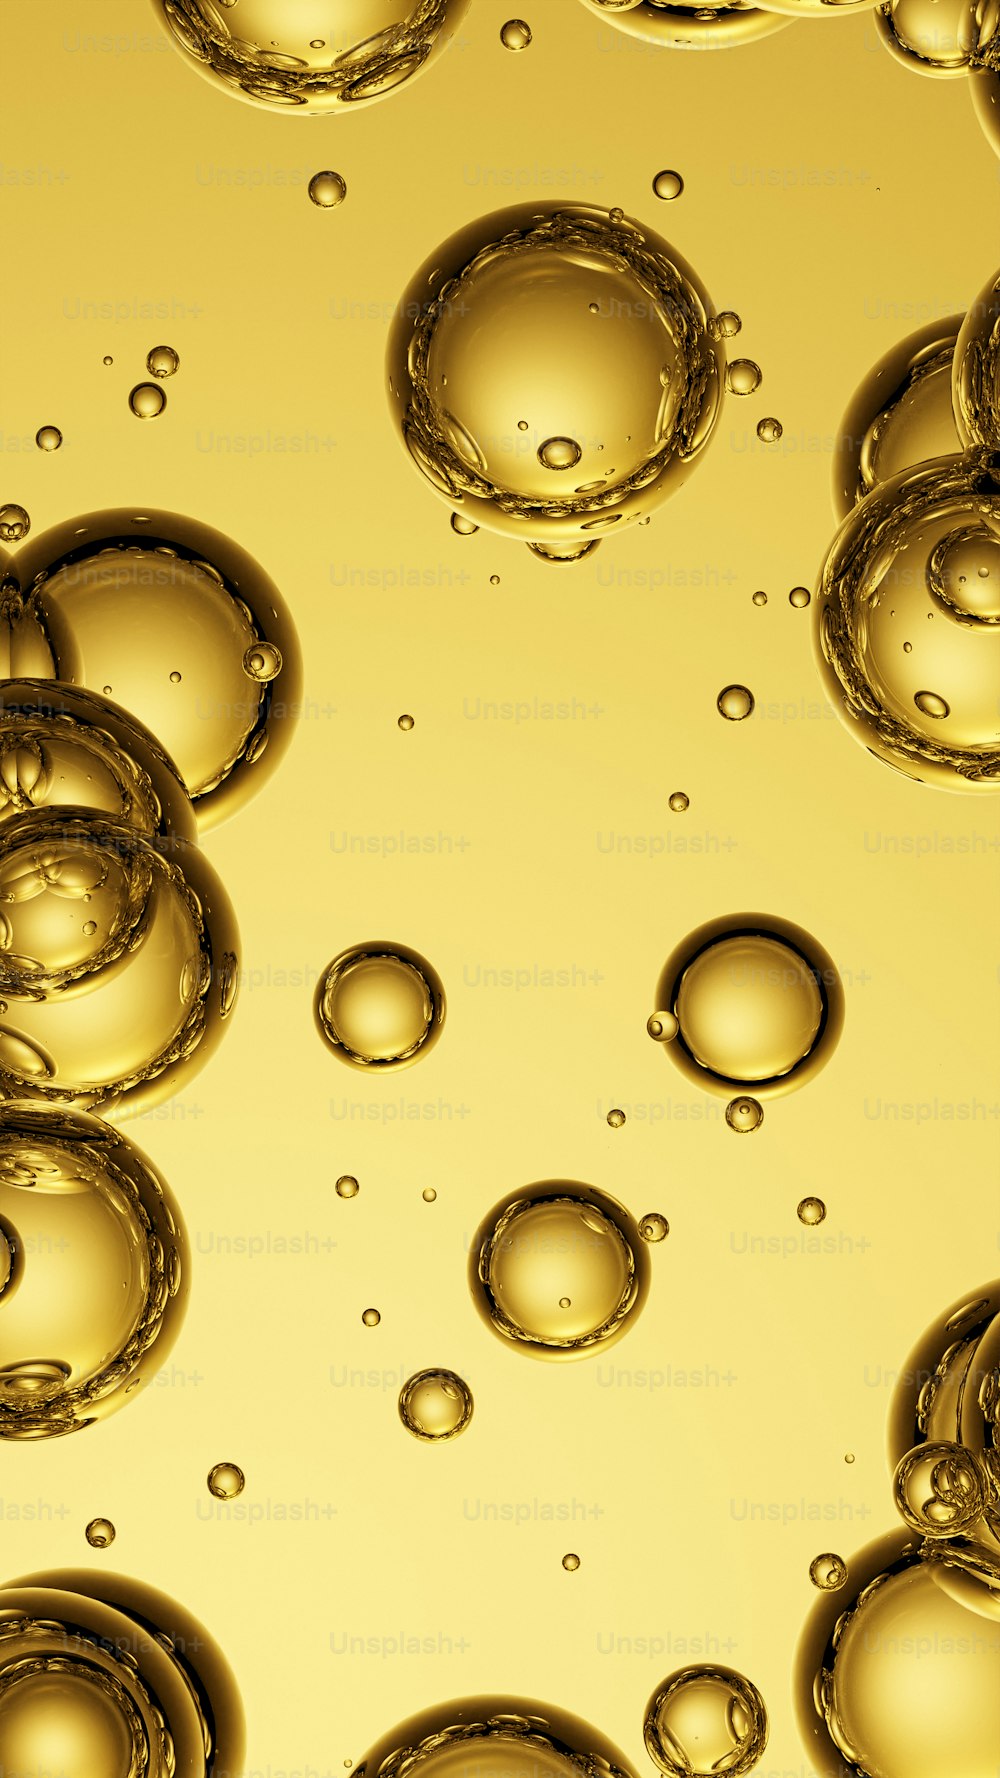 Un primo piano di bolle d'acqua su sfondo giallo